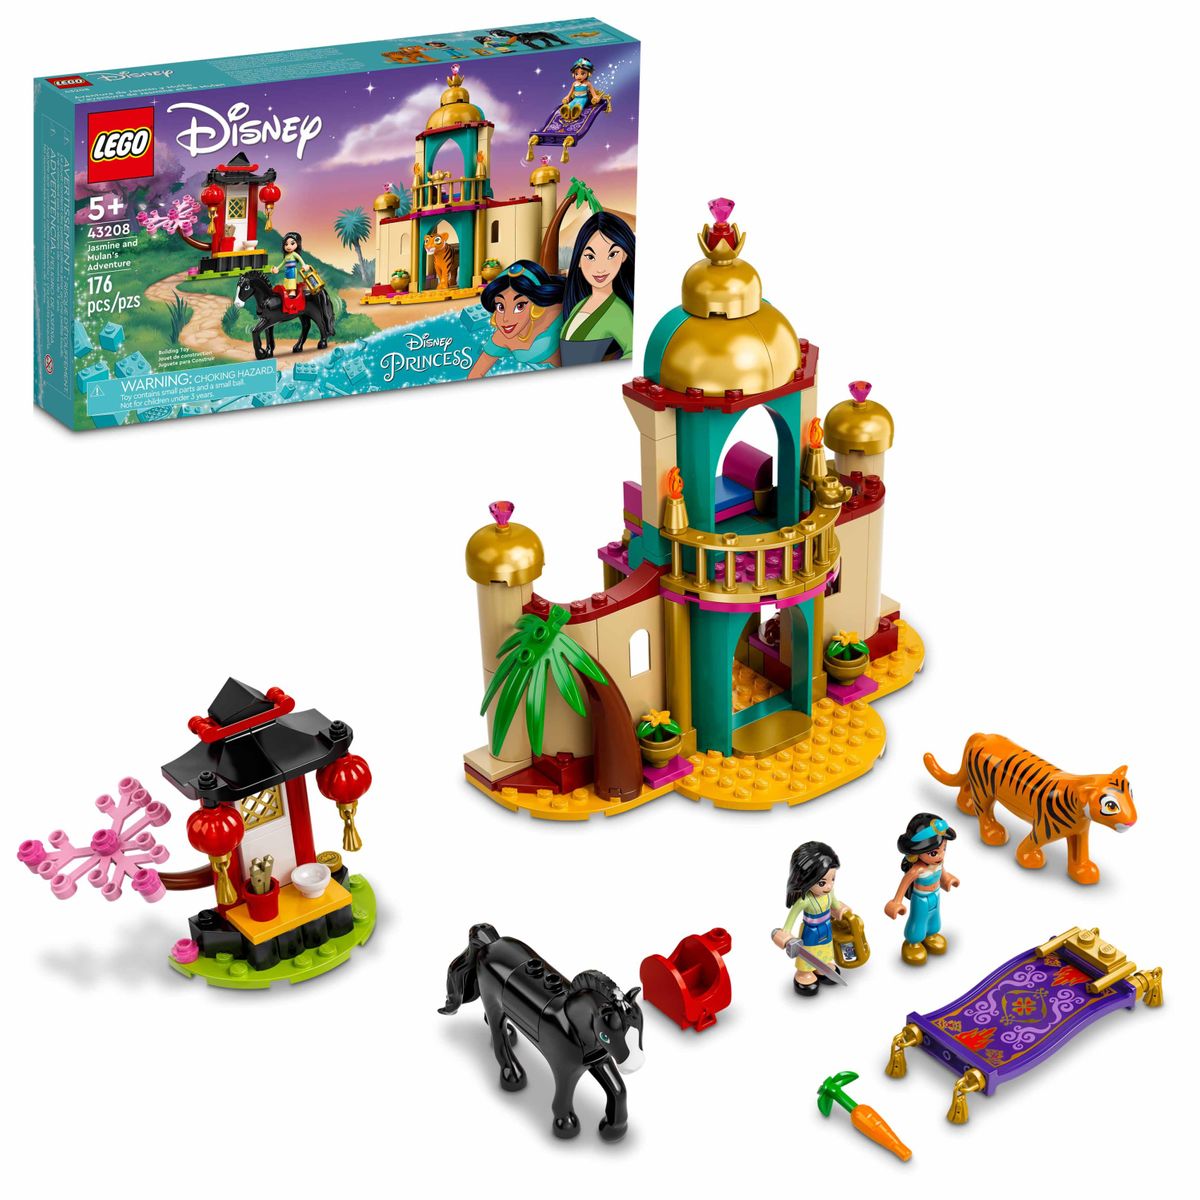 [送料無料] LEGO Disney Jasmine and Mulan's Adventure 43208 Building Kit; A Fun Princess Construction Toy for Kids Age Age 5+ (176 Pieces) [楽天海外通販] | LEGO Disney Jasmine and Mulan’s Adventure 43208 Building Kit; A Fun Princess Construction Toy